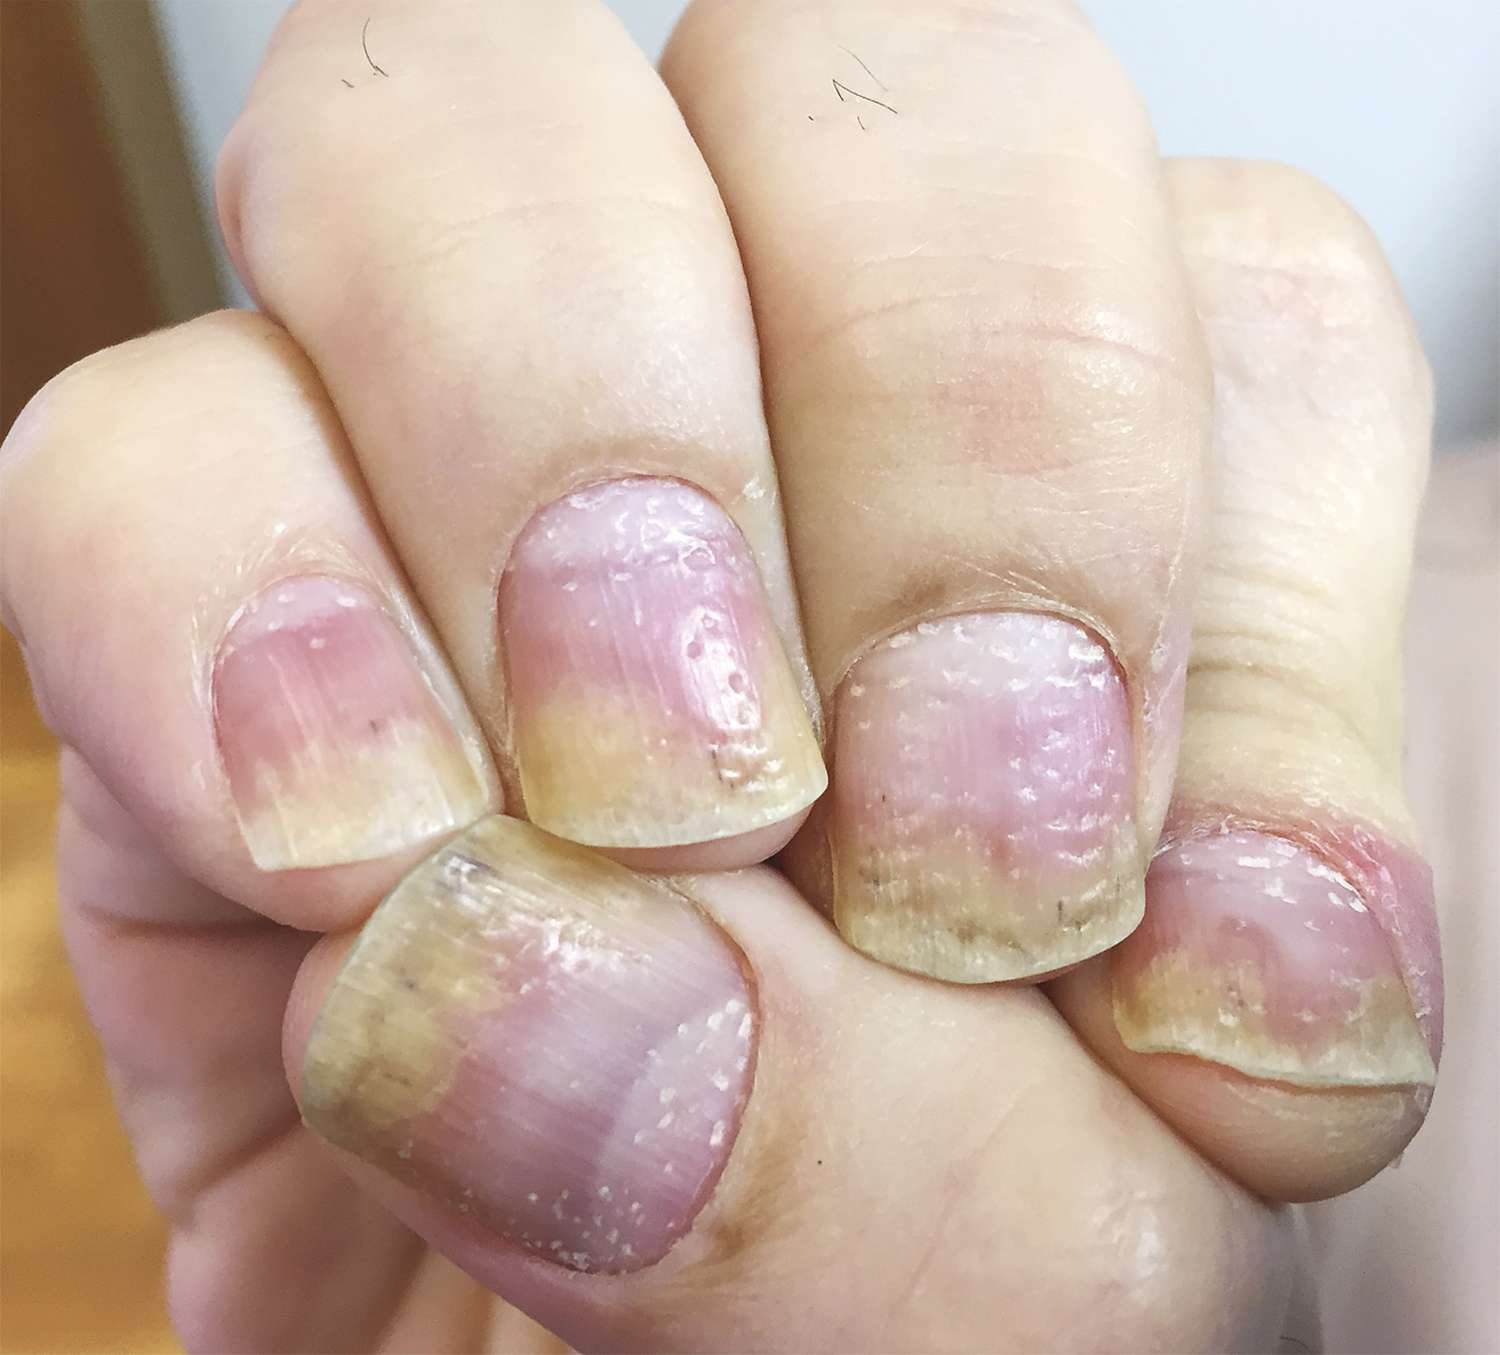 nail psoriasis vs fungus nail pitting